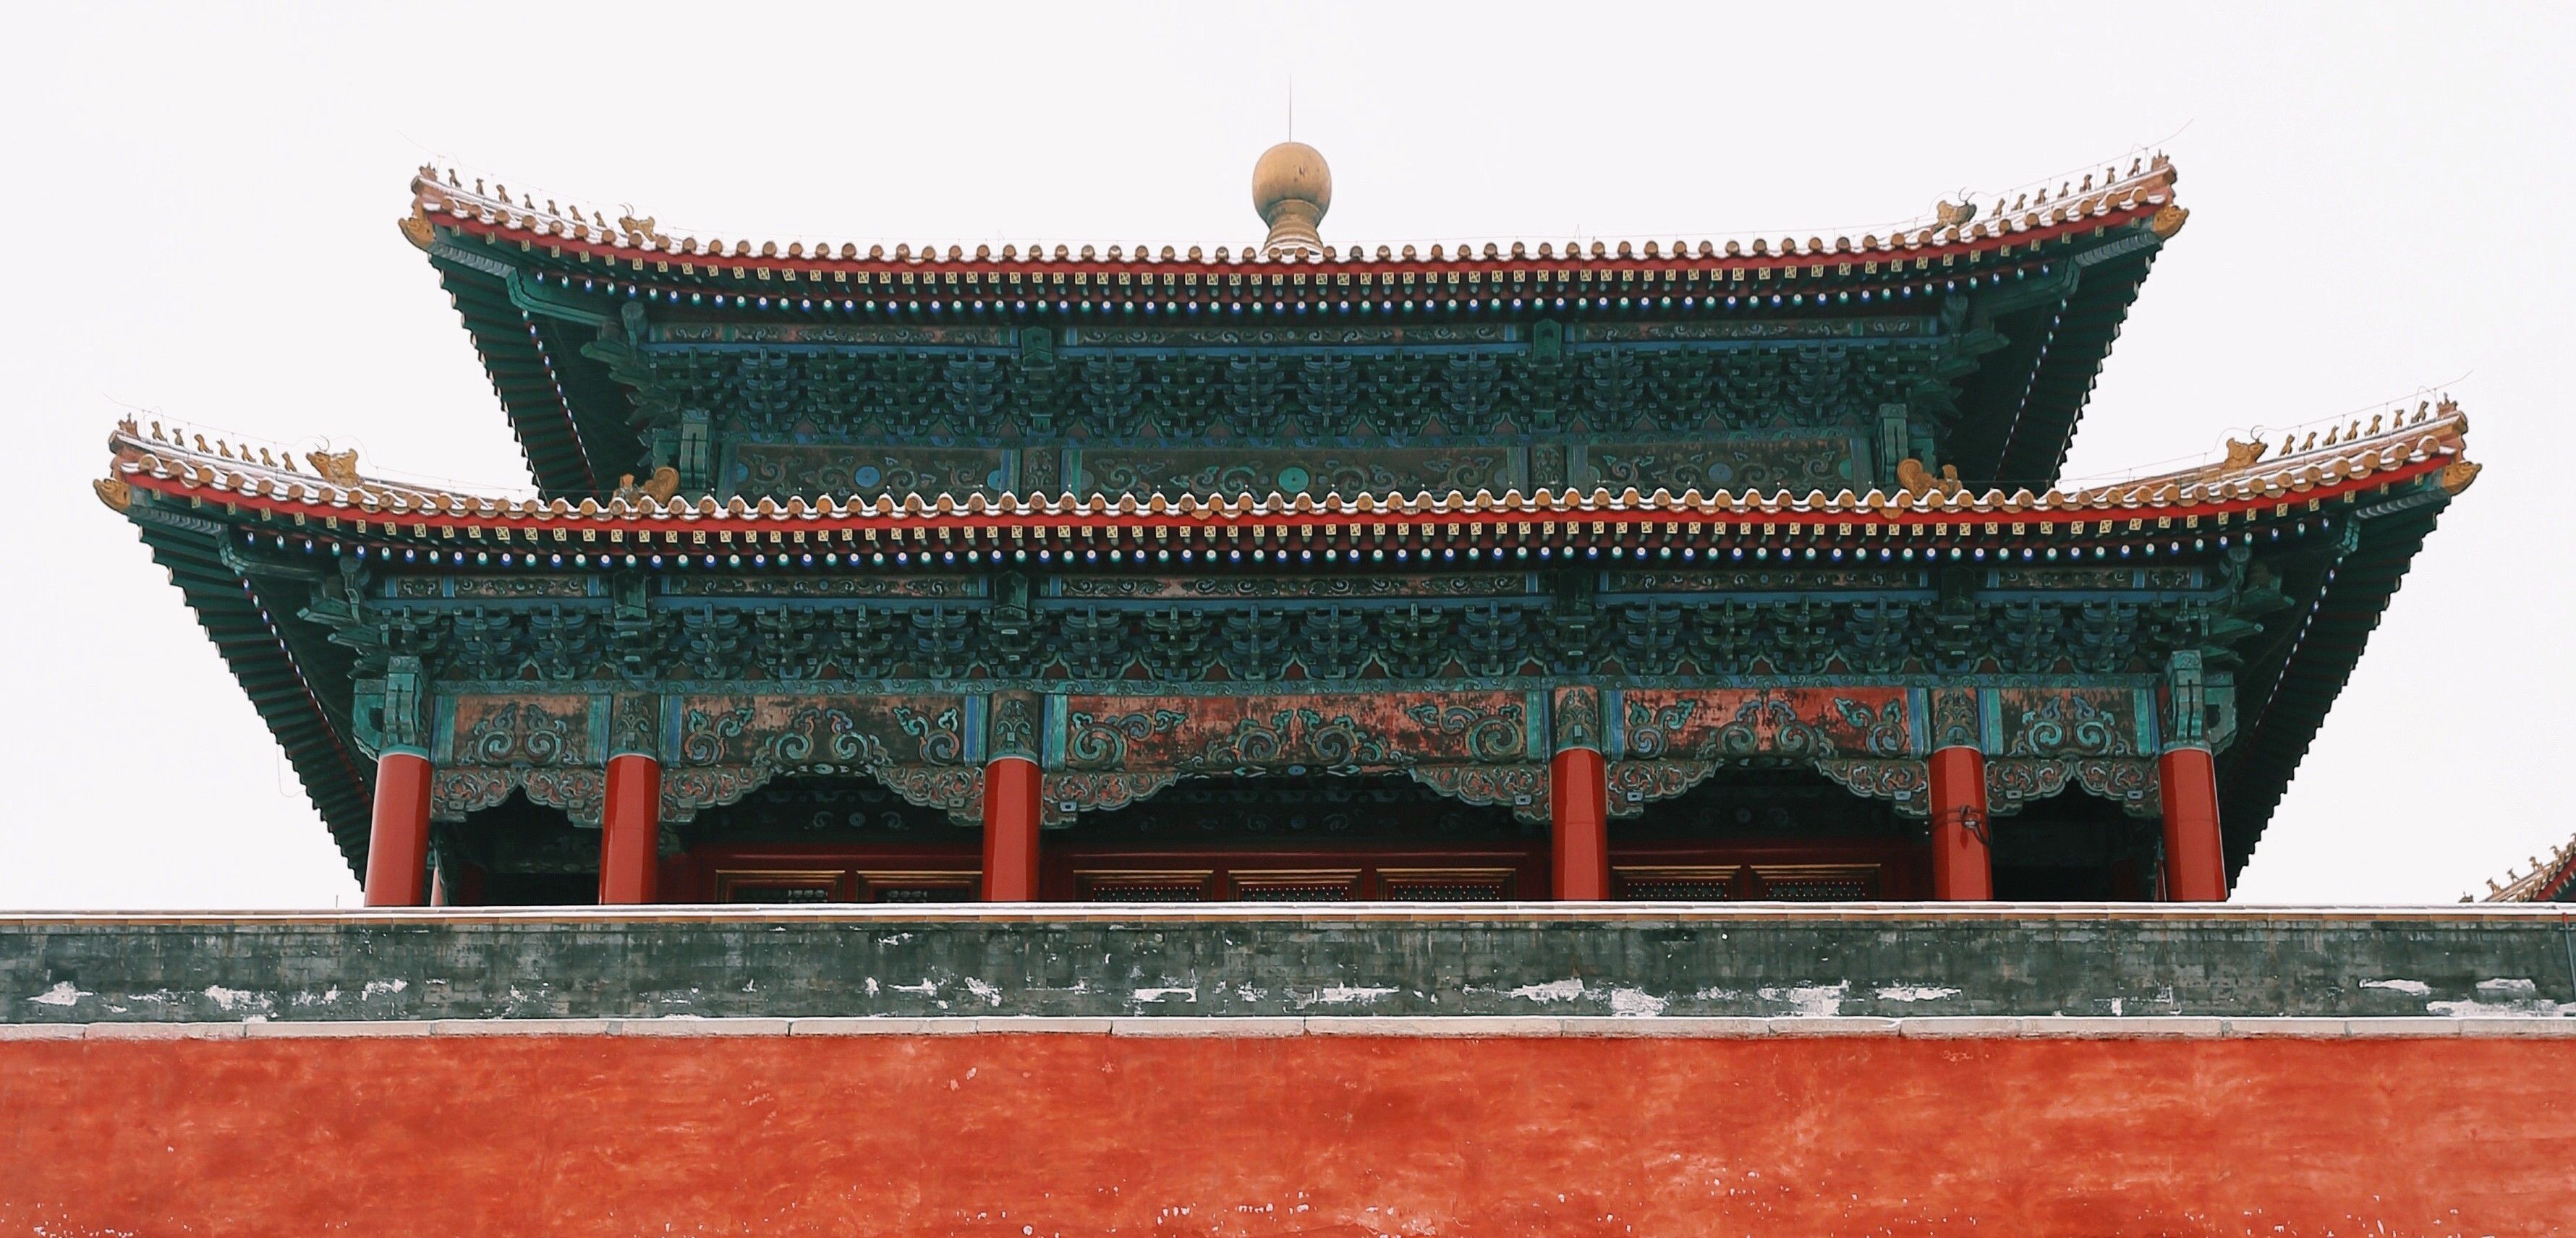 中国最难见的景观之一,传说级的雪中故宫,能见